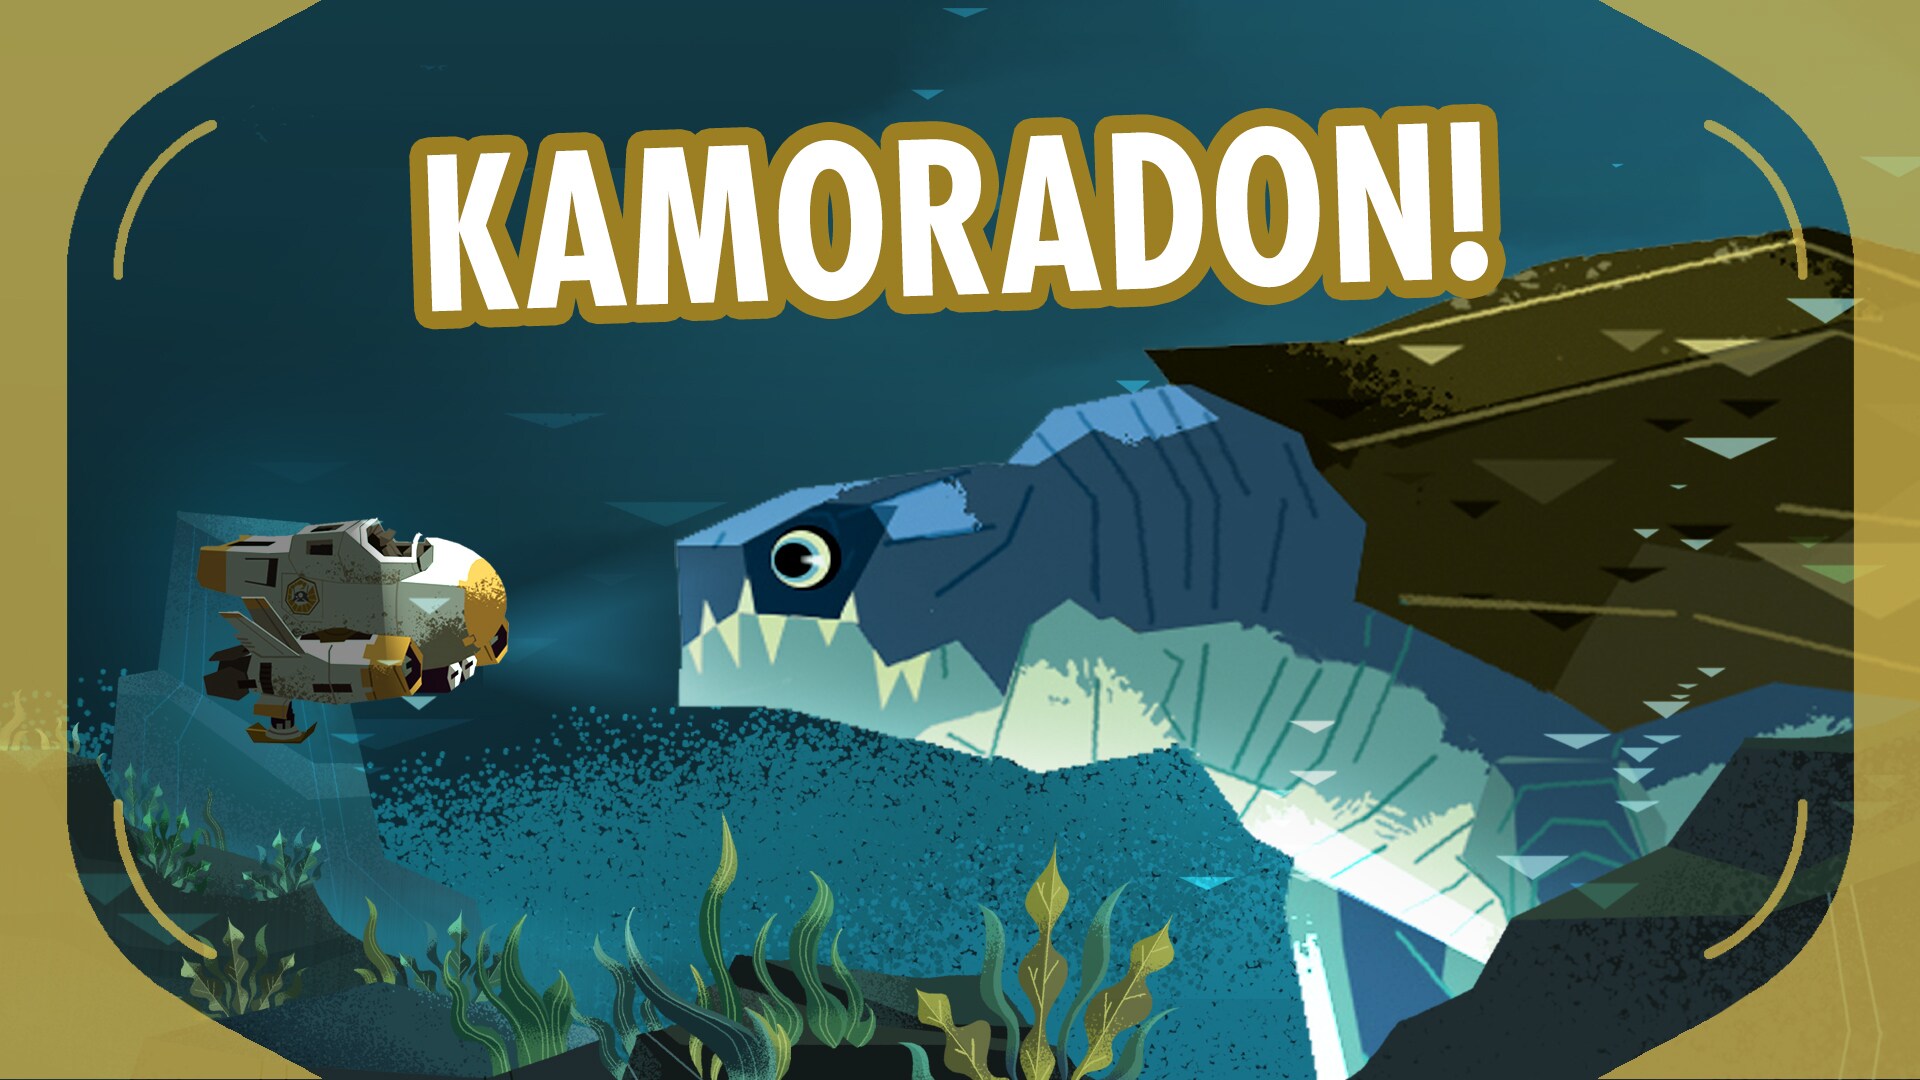 Kamoradon | Star Wars Galaxy of Creatures